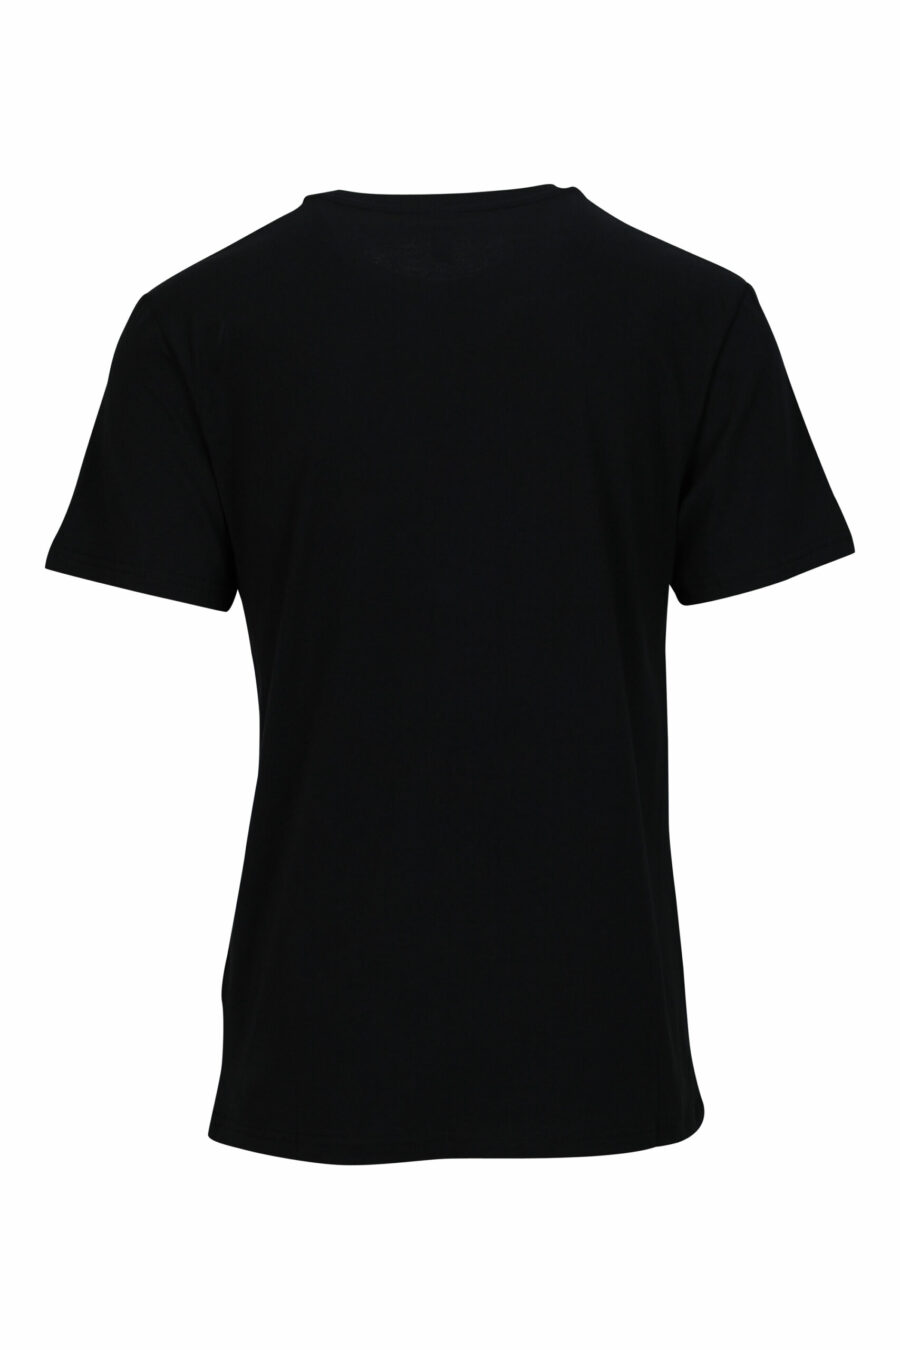 T-shirt noir avec minilogue doré "swim" - 667113673073 1 à l'échelle